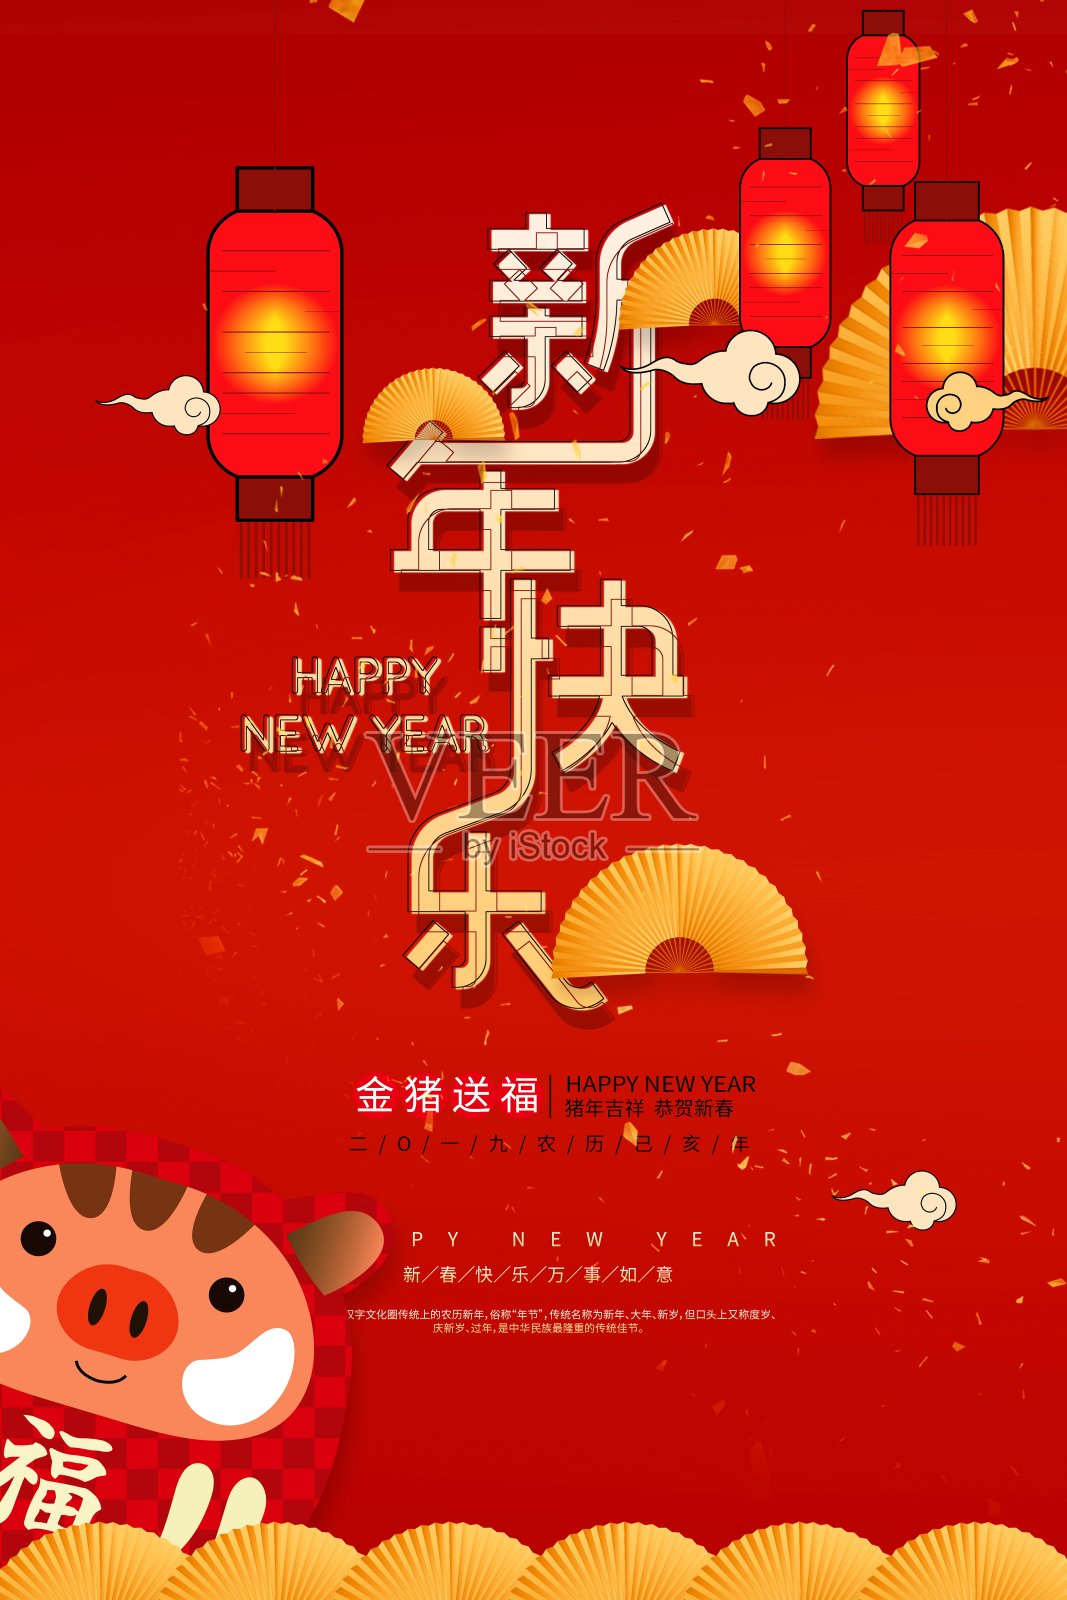 中国风新年快乐节日海报设计模板素材